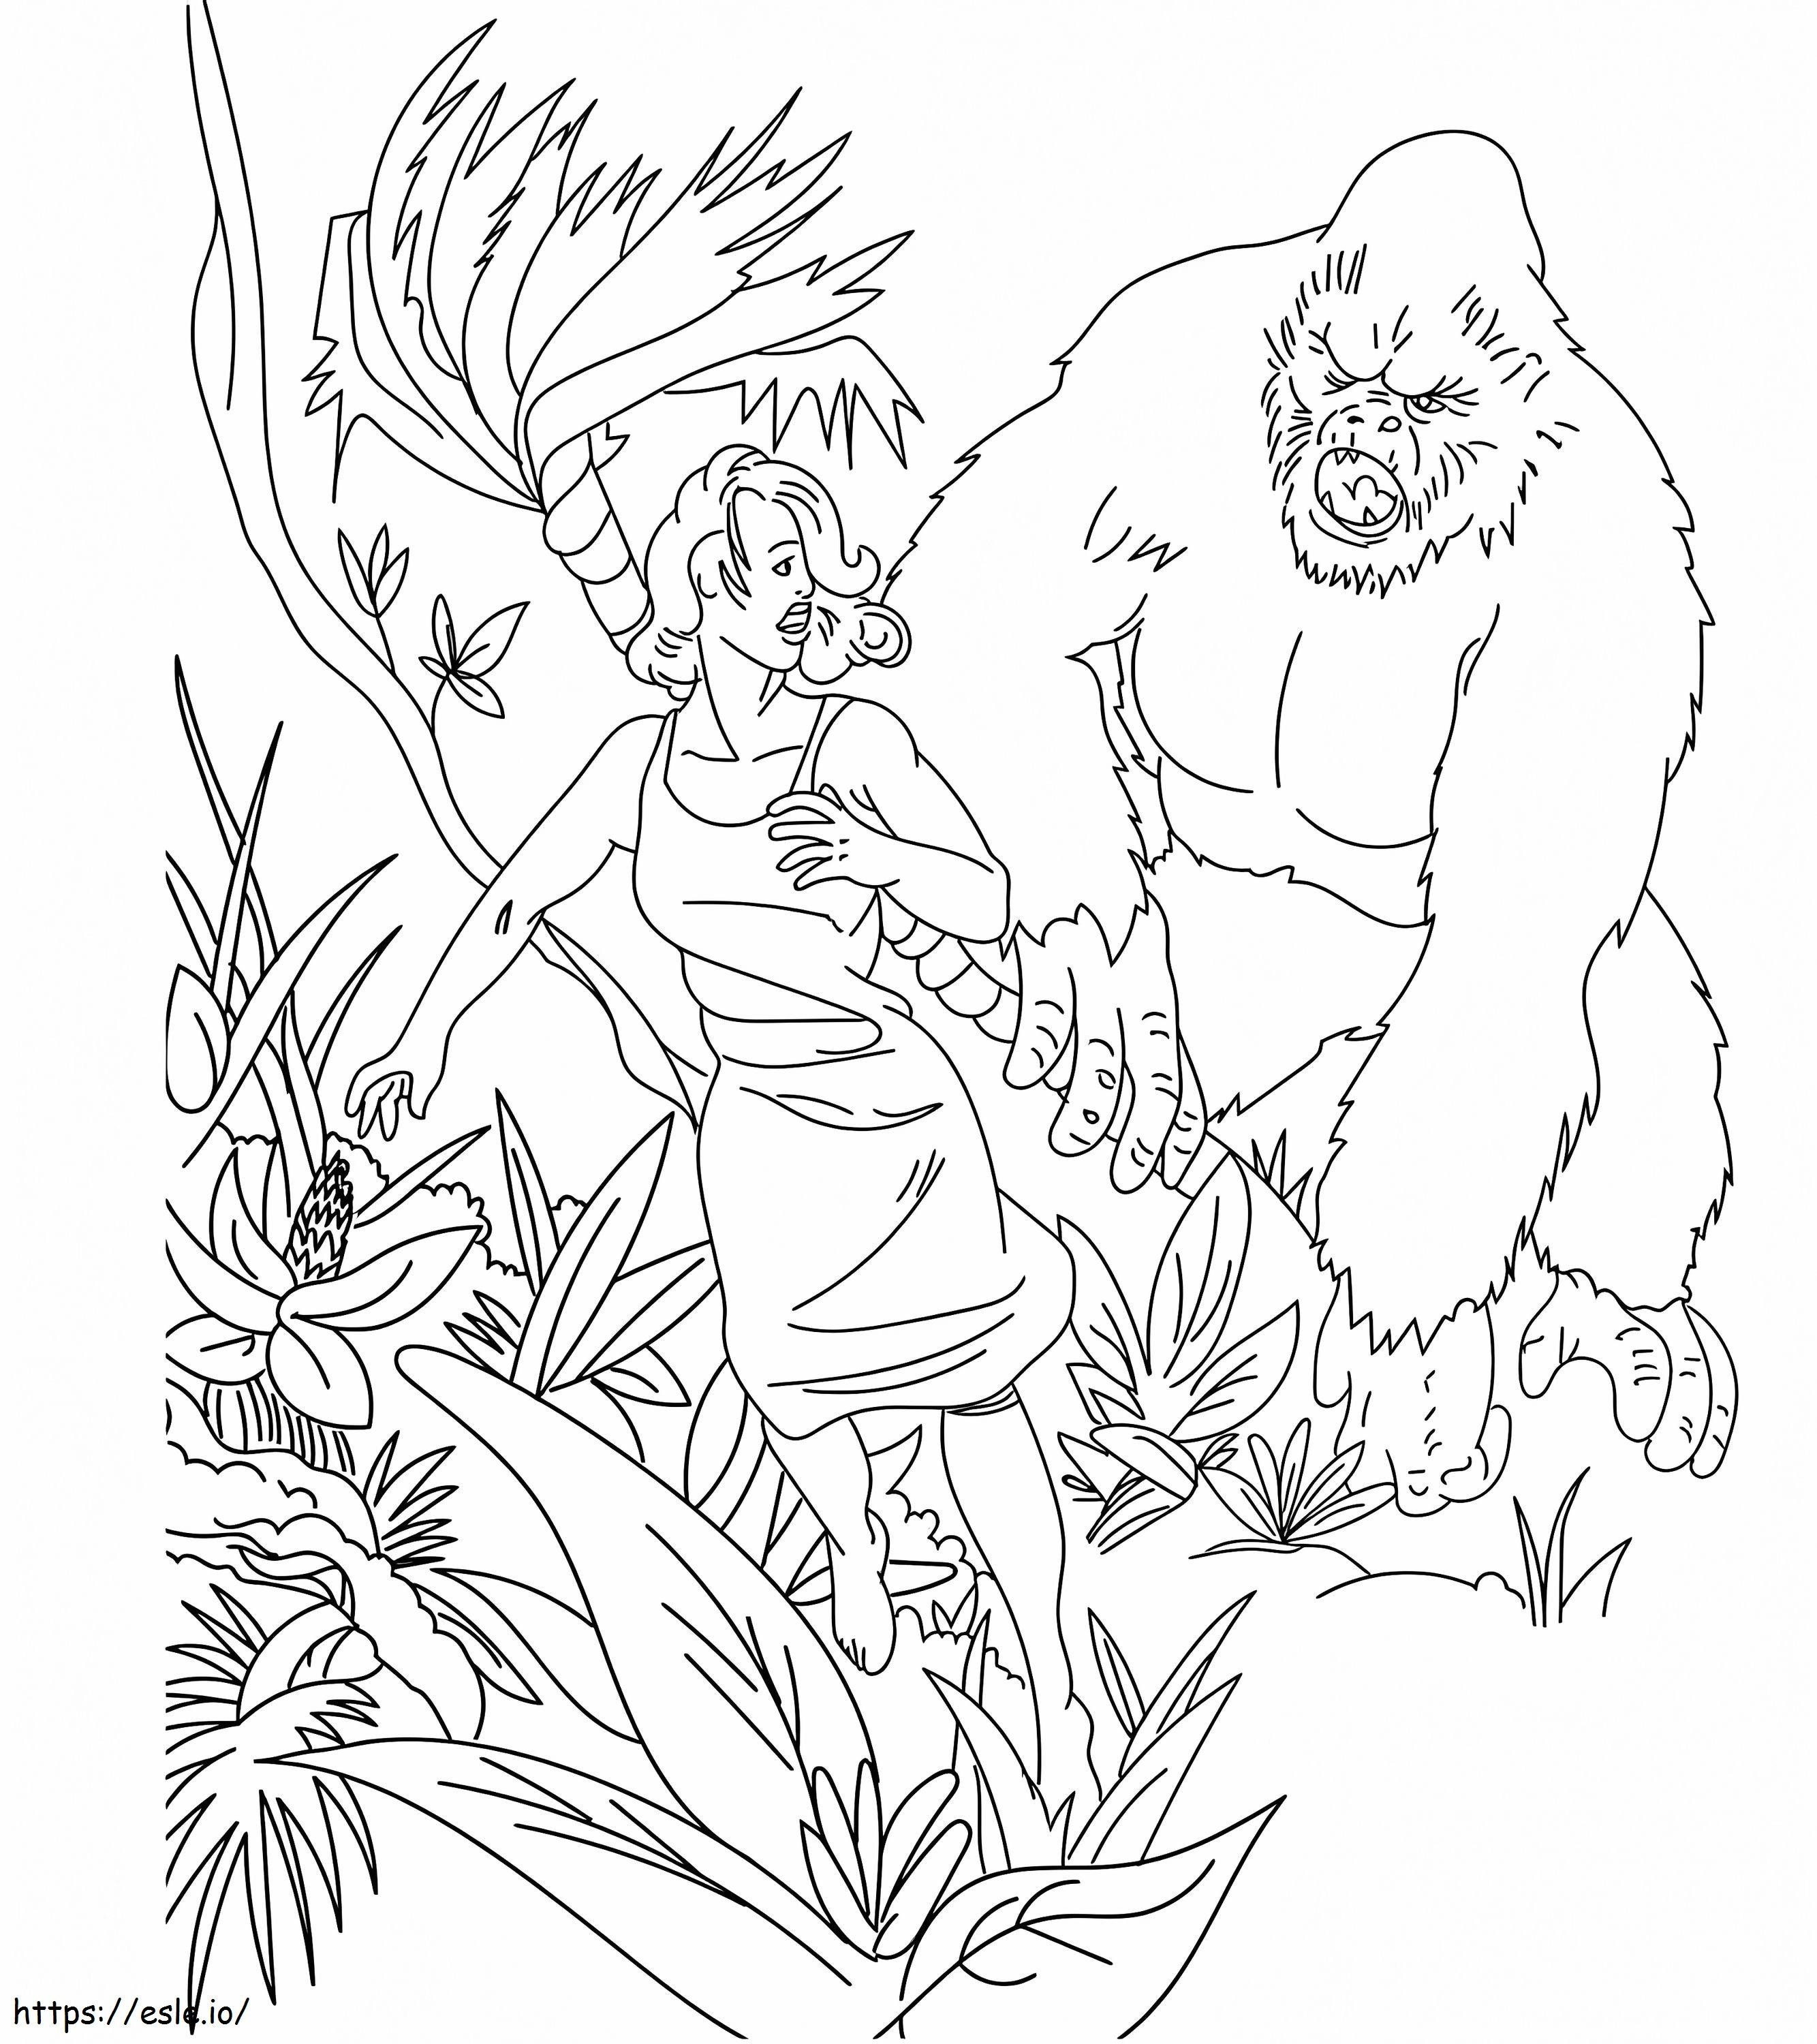 King Kong ve Kadın boyama